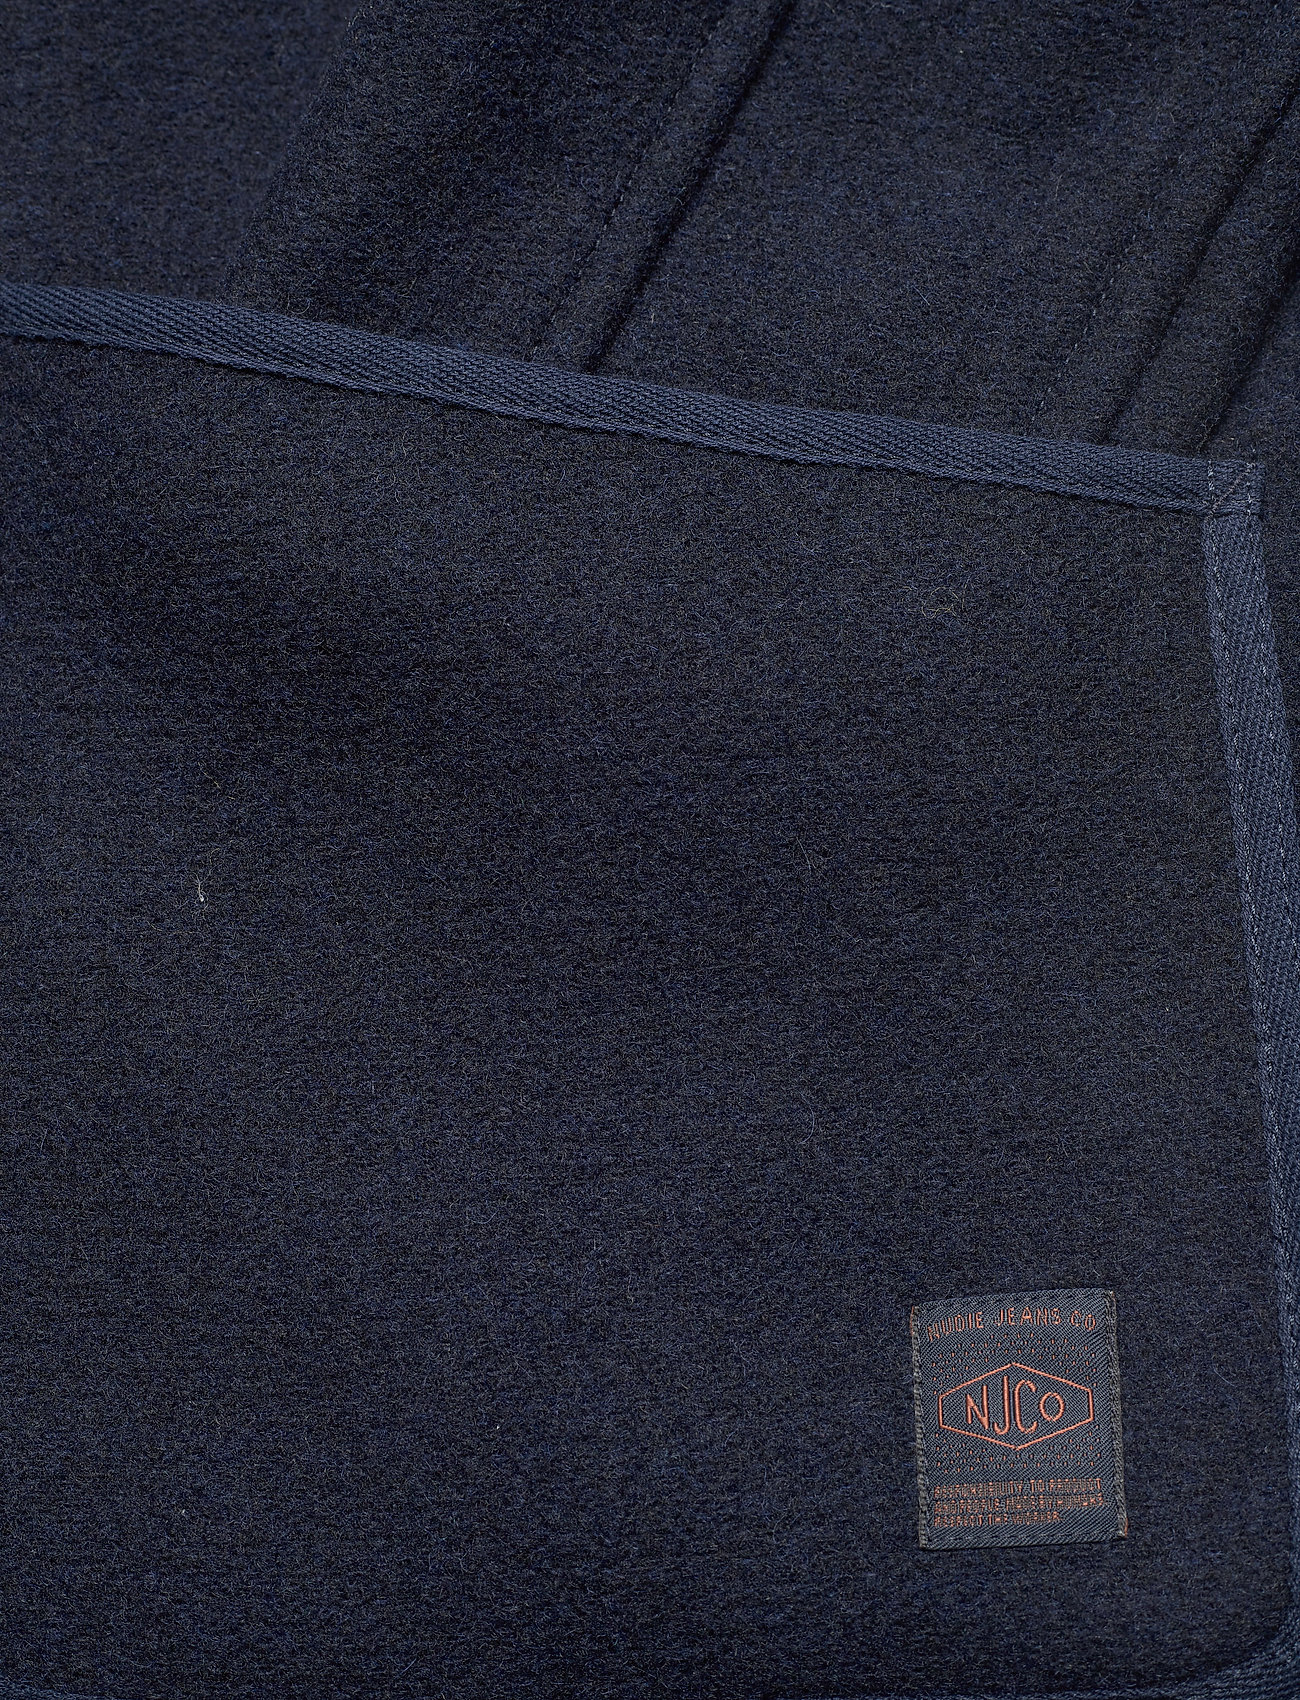 Nudie Jeans - Fred Cloth Jacket Navy - spijkerjasjes zonder voering - navy - 6